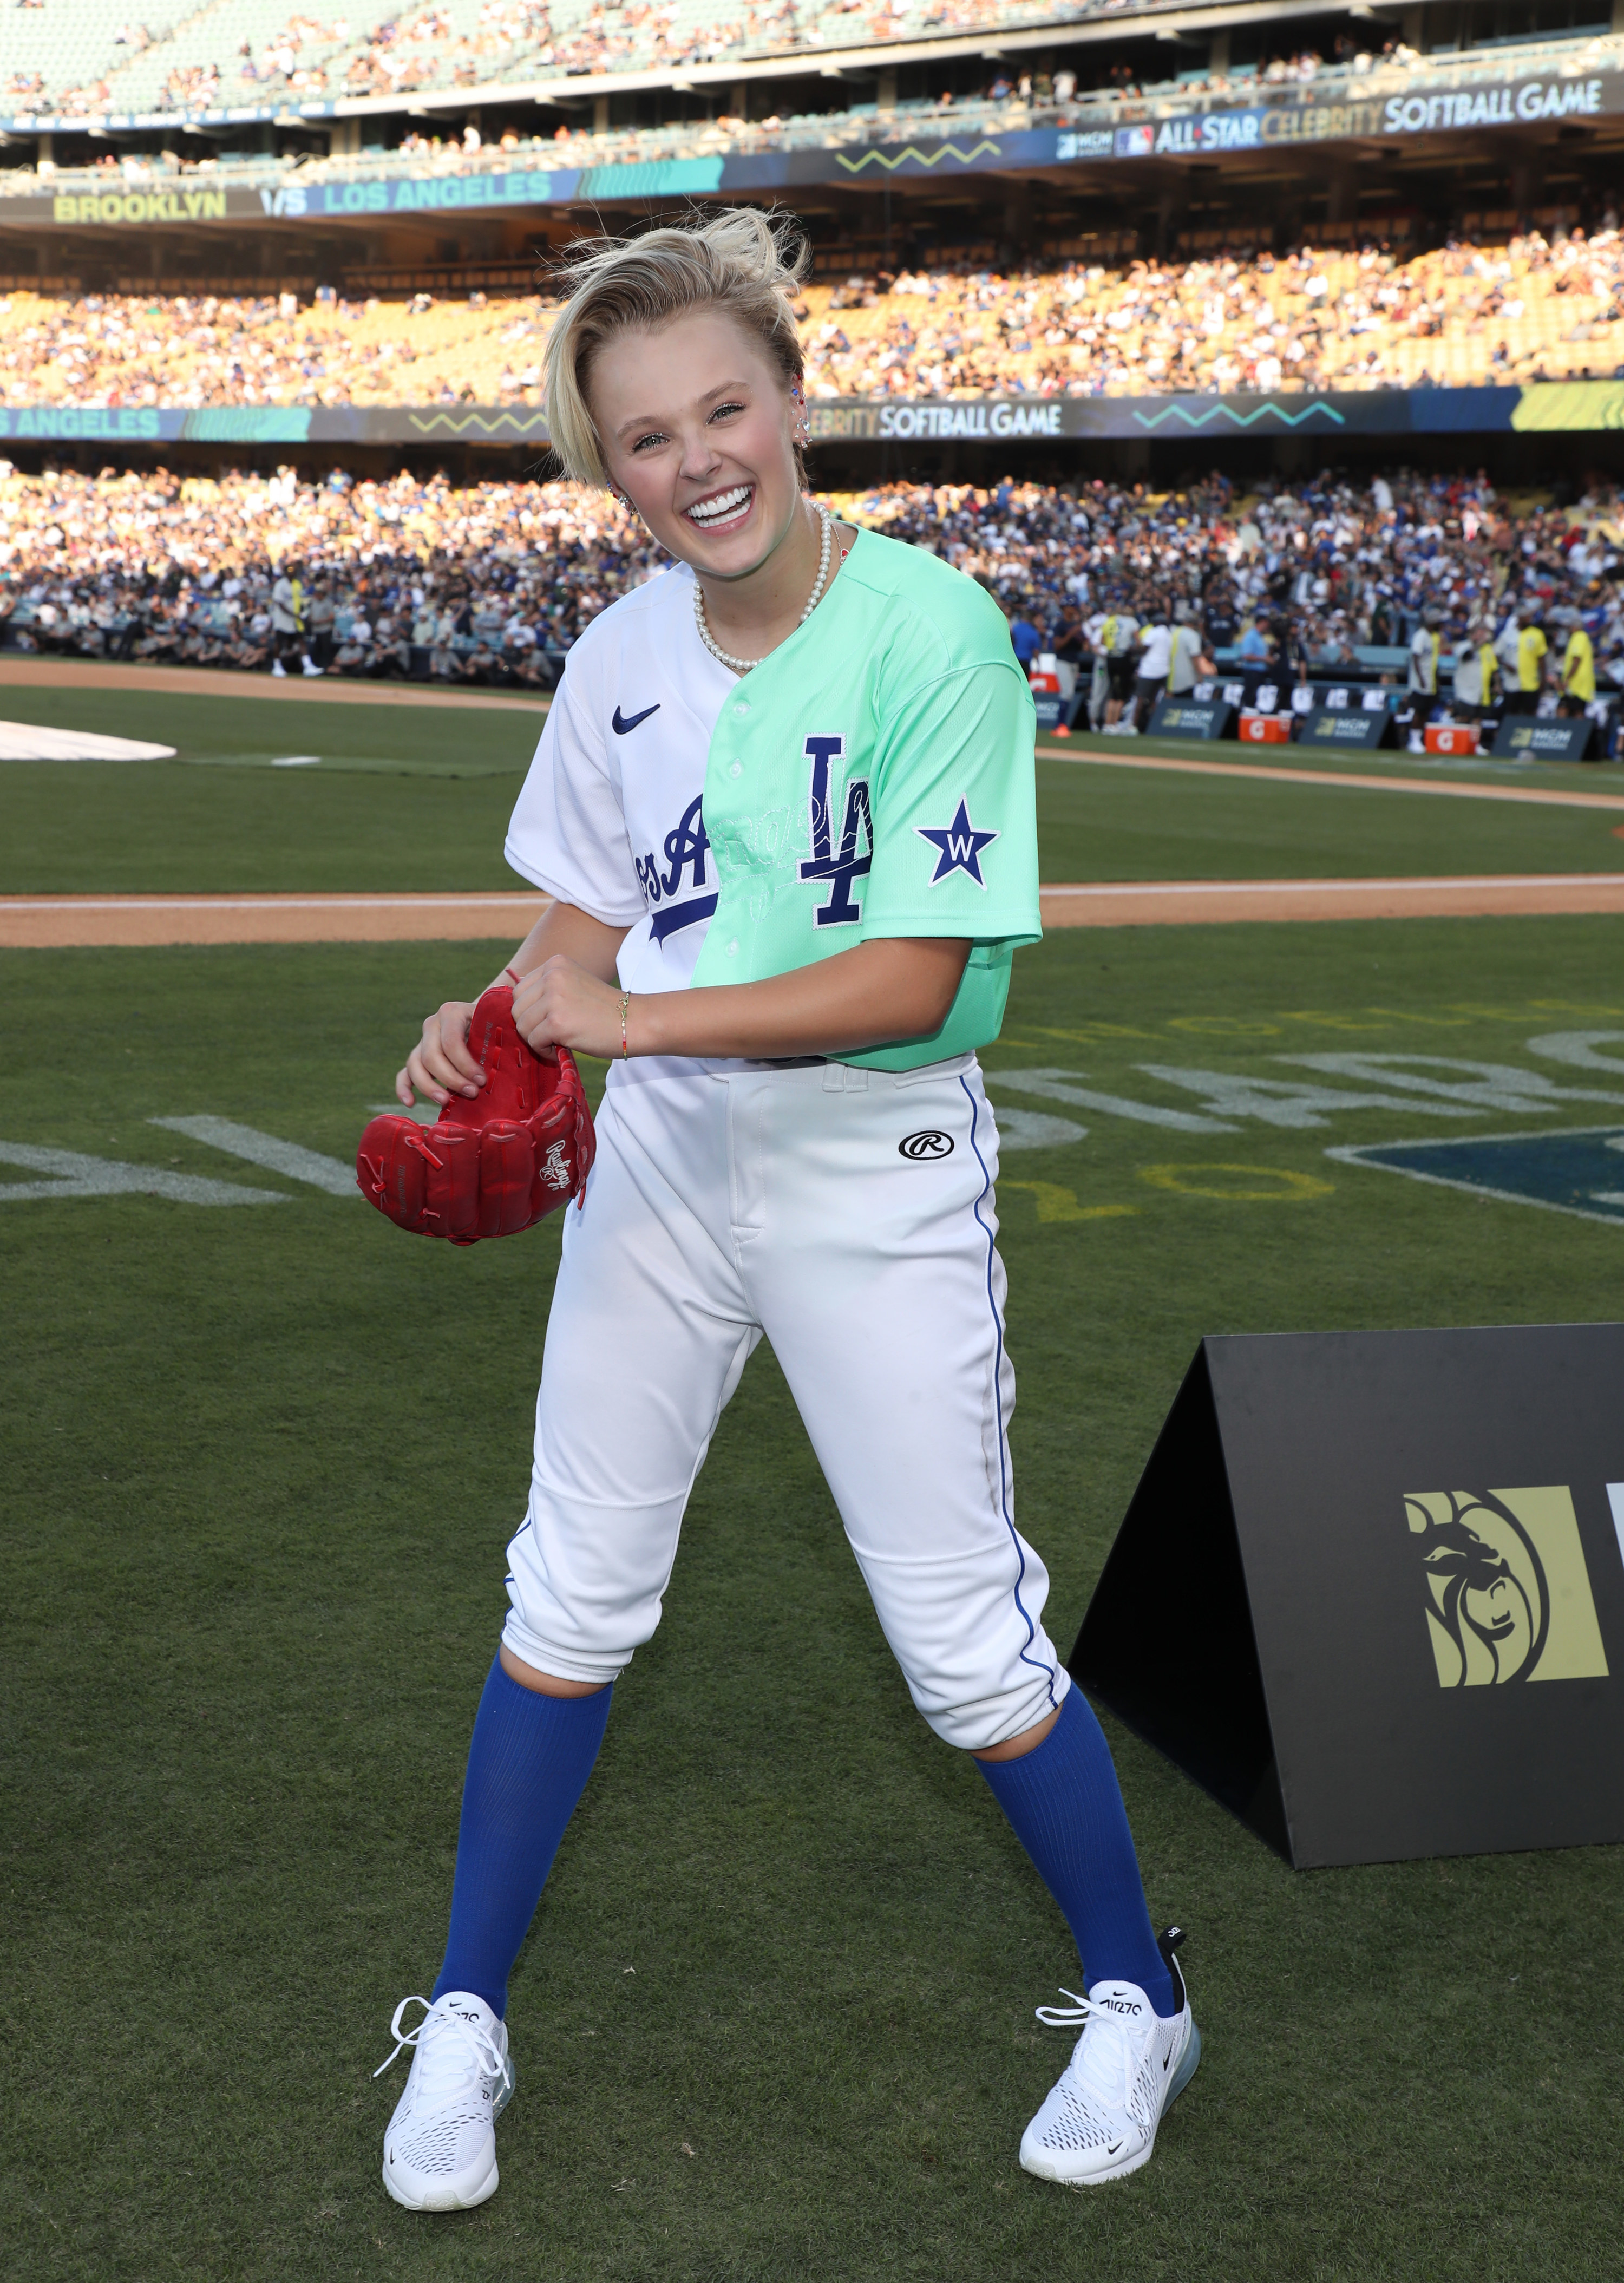 jojo wearing a baseball uniform on the field